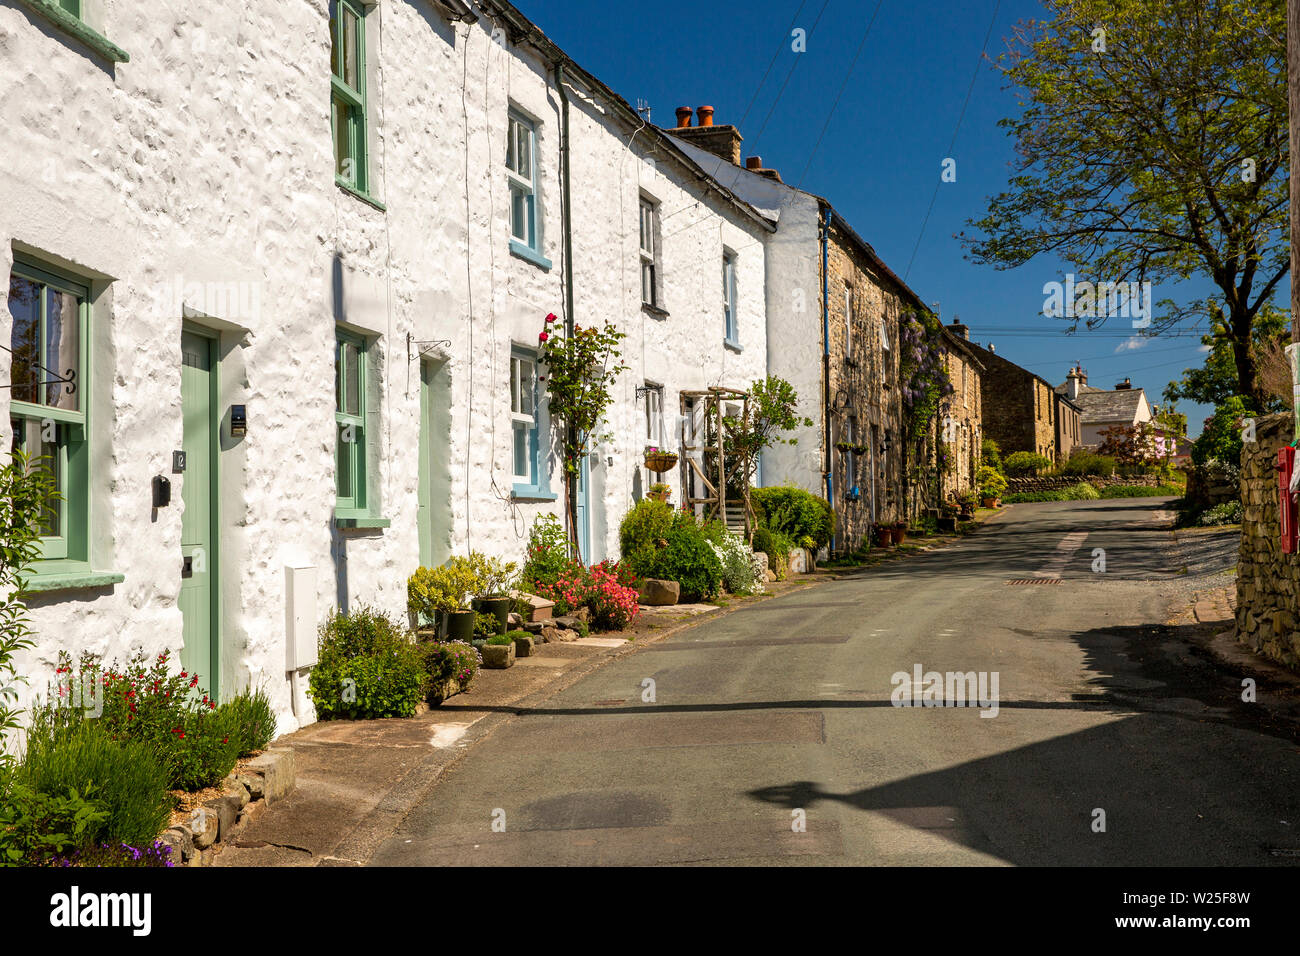 UK, Cumbria, Sedbergh, Millthrop, construit en pierre et cottages blanchis sur route à travers hamlet Banque D'Images